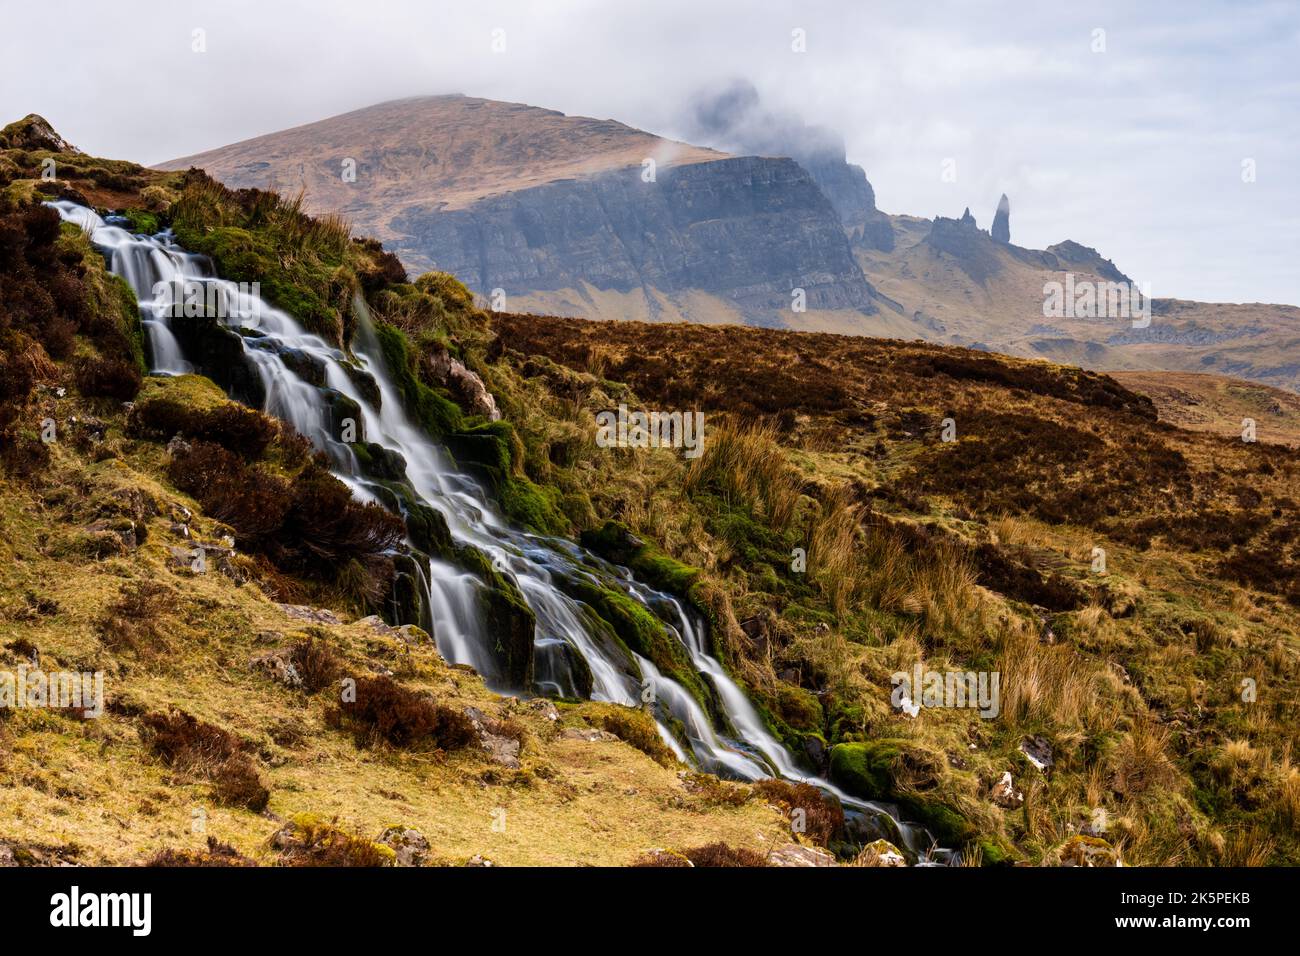 Ein wunderschöner Wasserfall, der die mit Moos bedeckten Felsen mit nebligen Bergen in der Ferne hinunterfließt Stockfoto